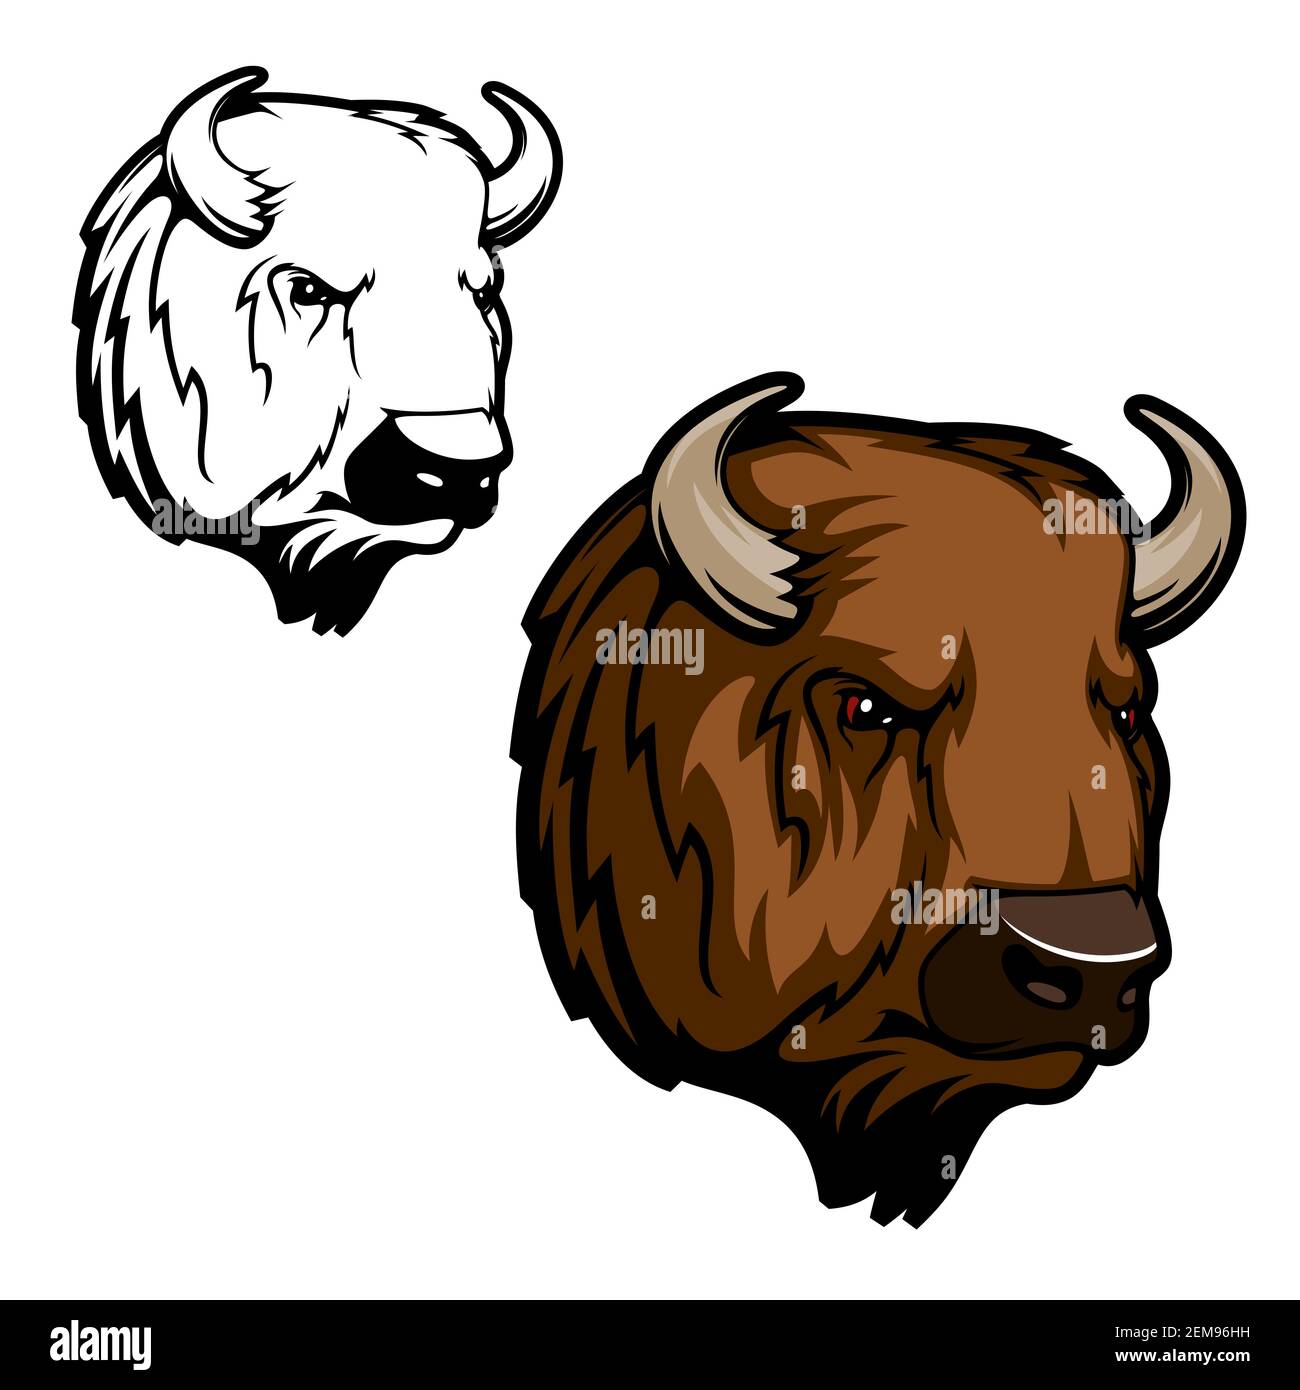 Bisonte americano o búfalo animal vector diseño de de caza, equipo deportivo o mascota zoológico. Cabeza de toro de buey salvaje con marrón y cuernos, con capucha y ho Imagen